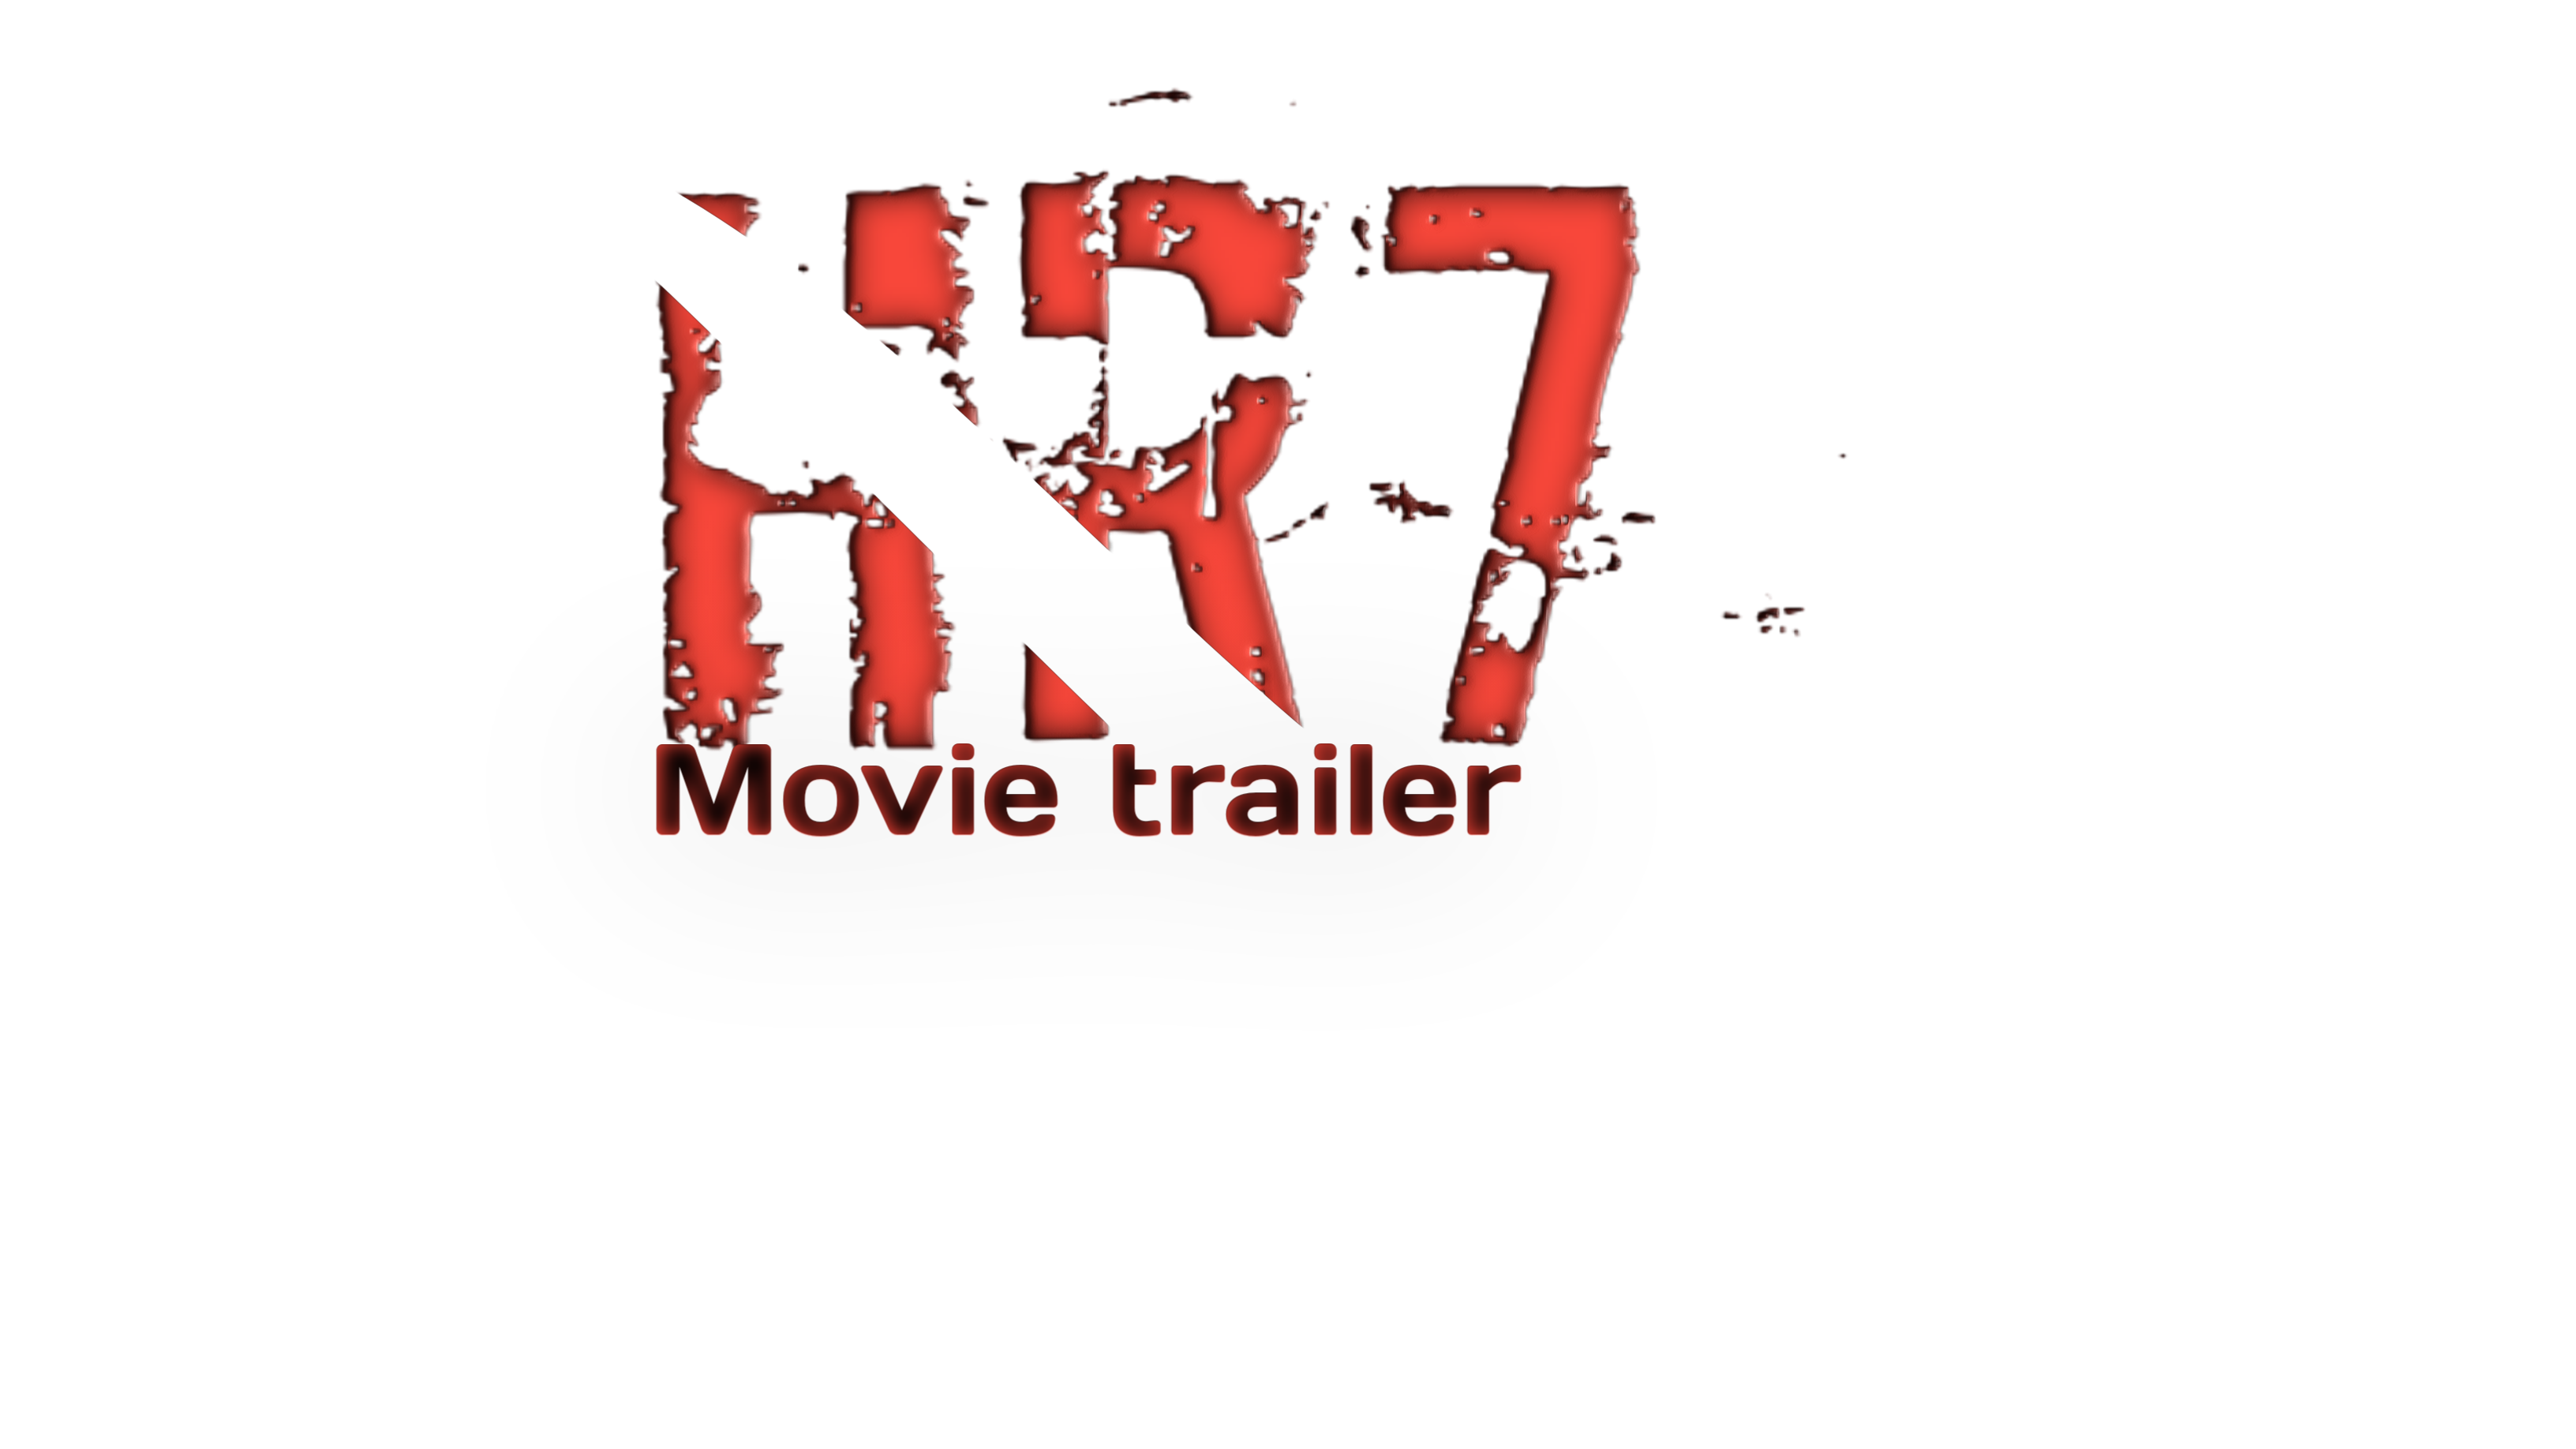 HR7 Movie trailer